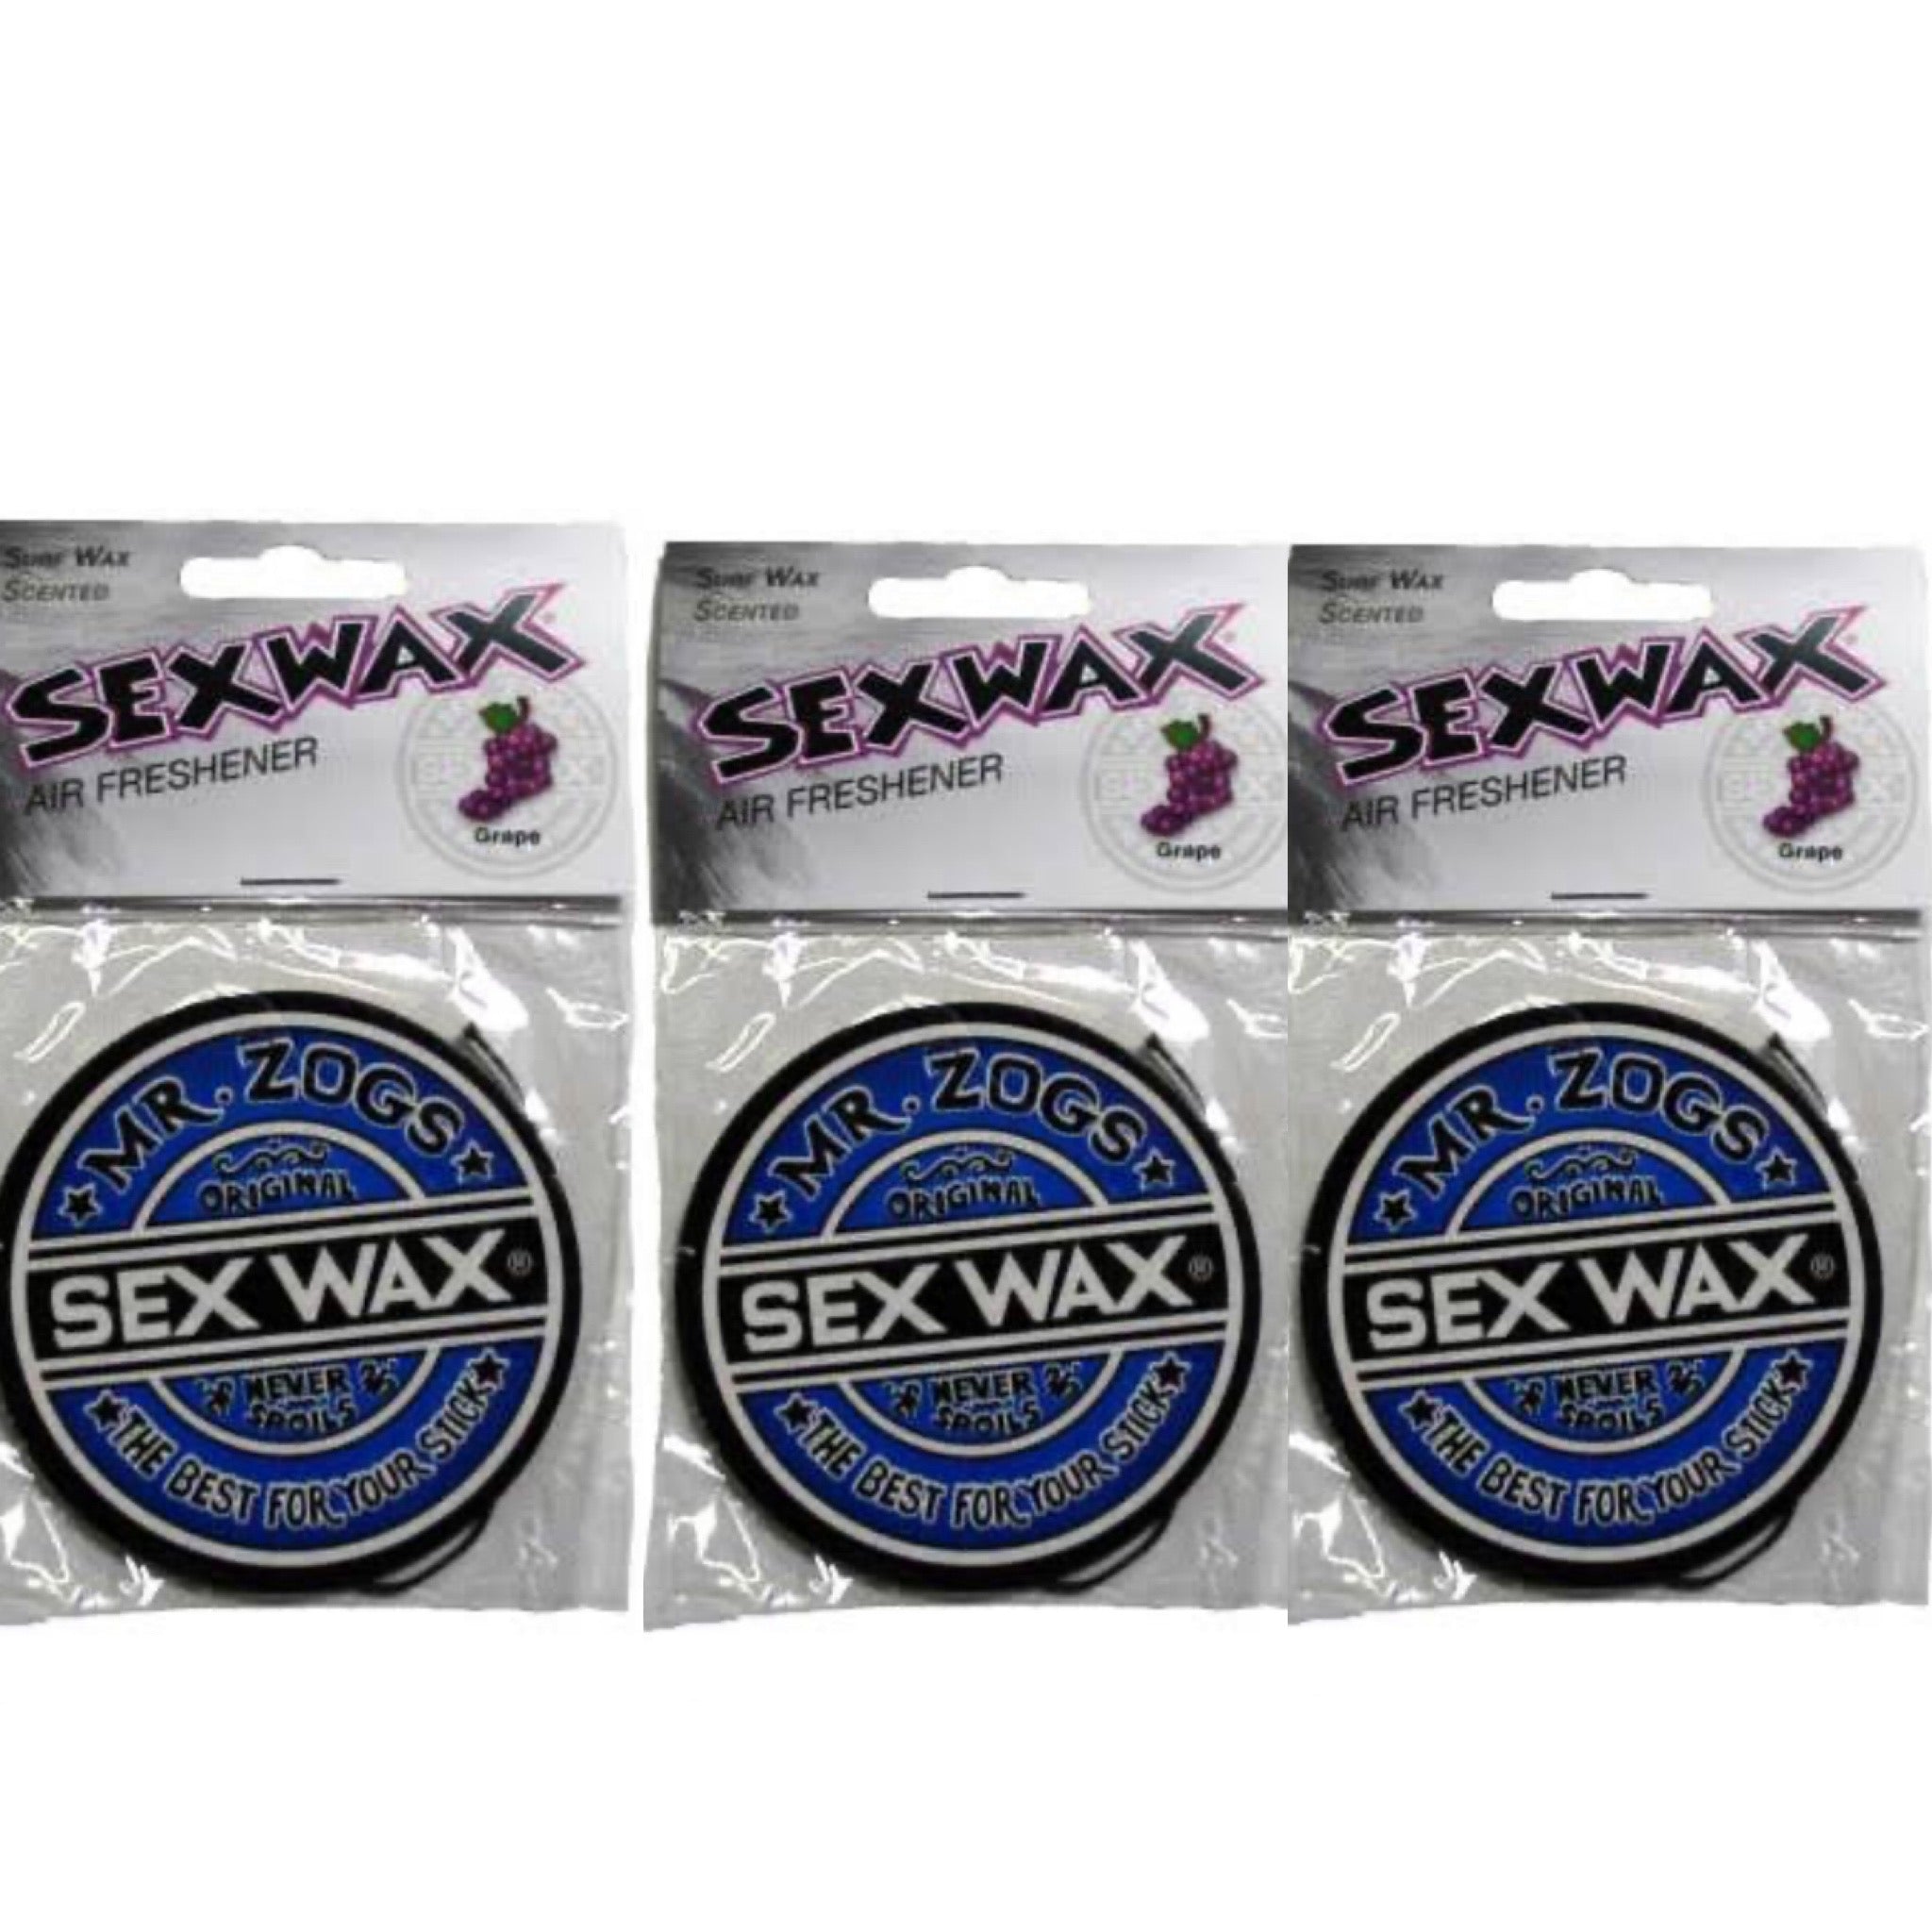 Sex Wax Air Freshener Grape 3-Pack